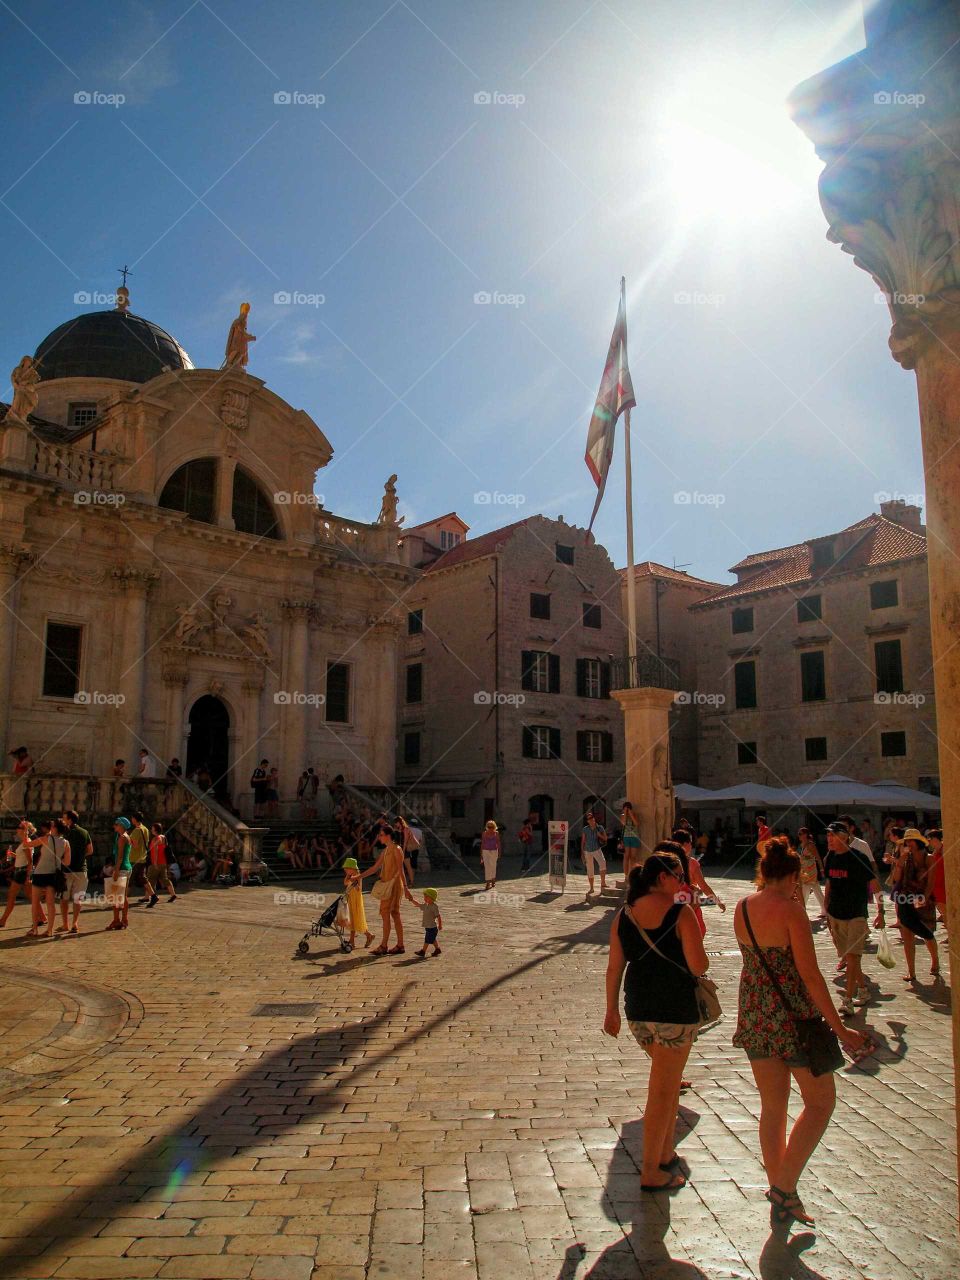 Libertas. Square of old Dubrovnik